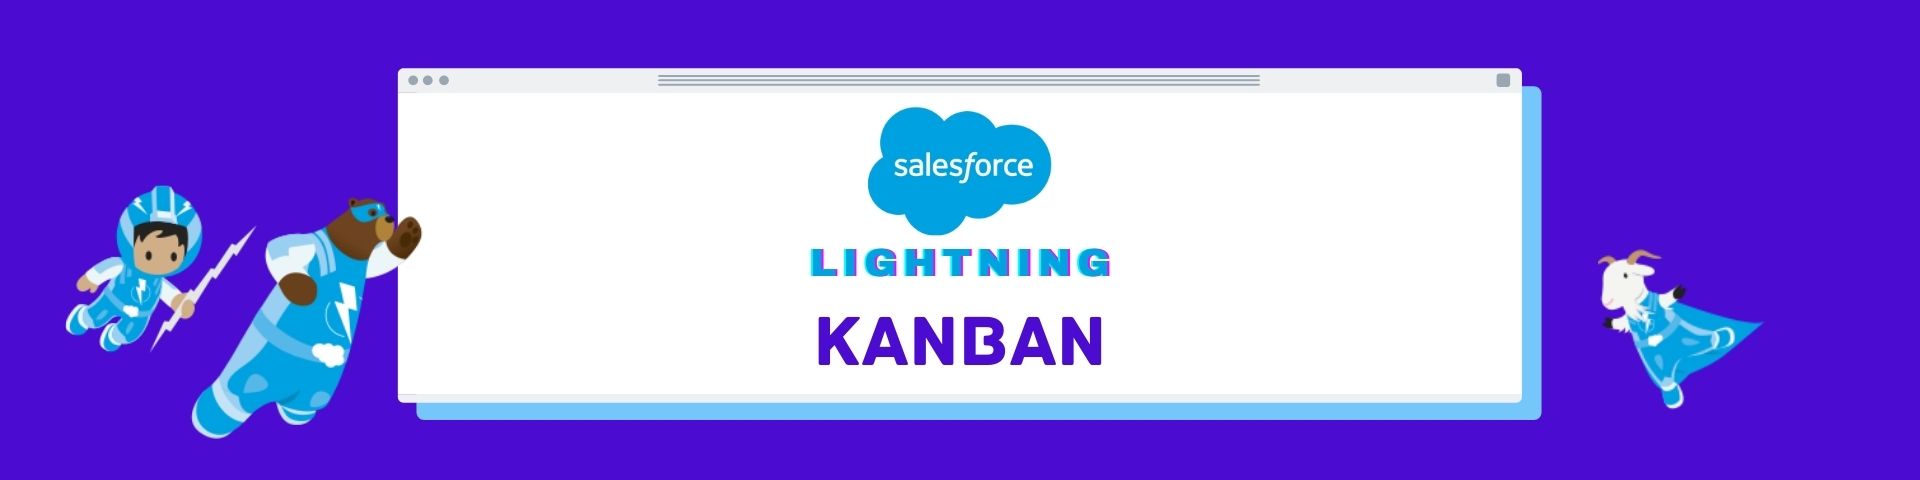 Salesforce Lightning Kanban